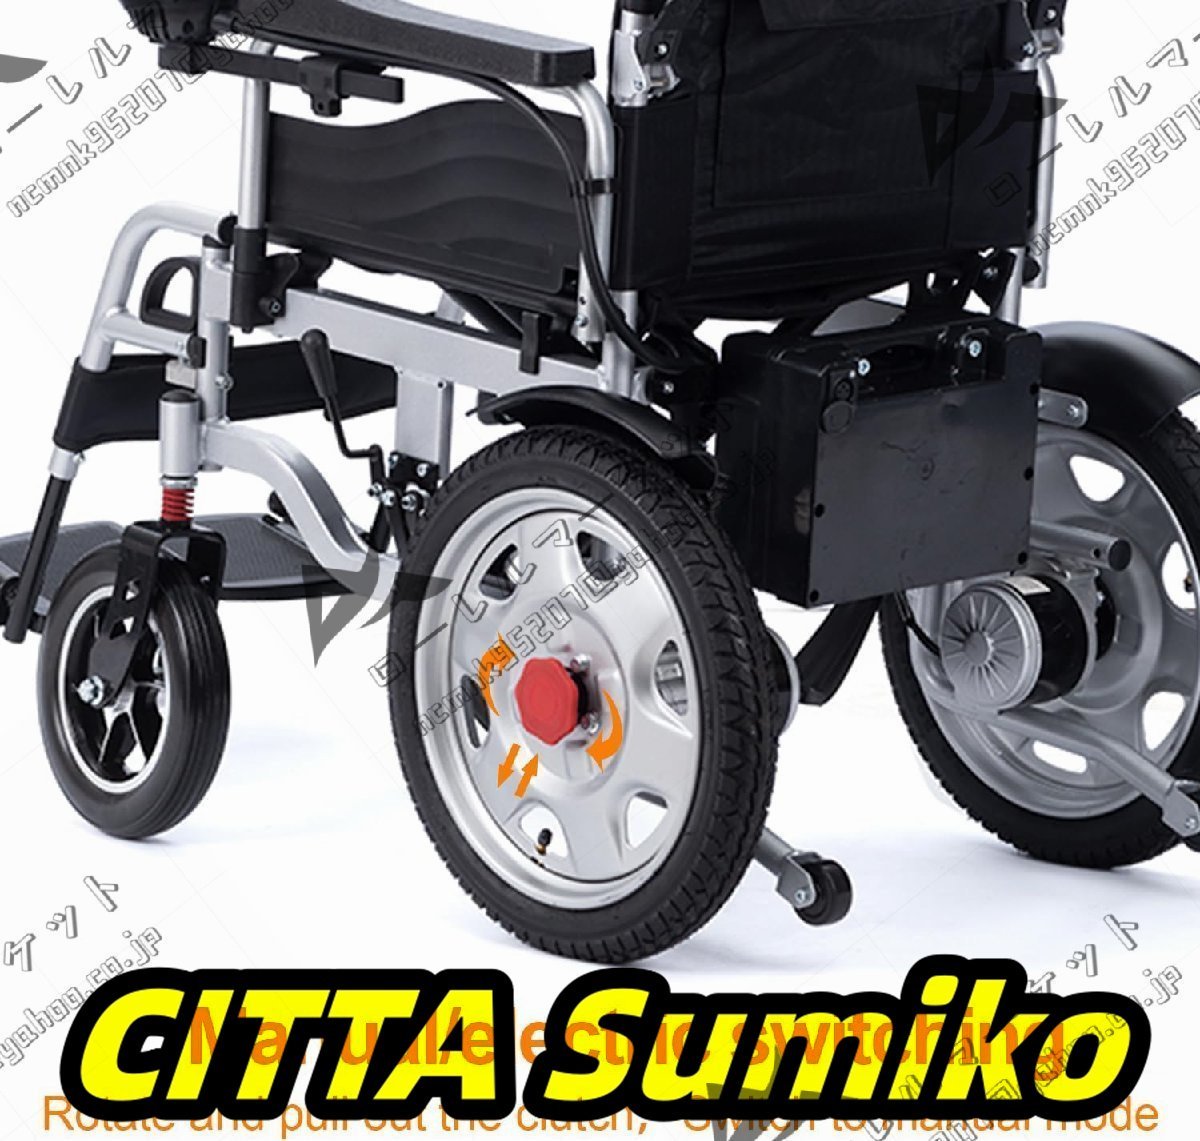  все земля форма соответствует складной электрический инвалидная коляска sinia для портативный электрический инвалидная коляска двойной 500W motor для взрослых путешествие инвалидная коляска 20 миля 330 фунт 